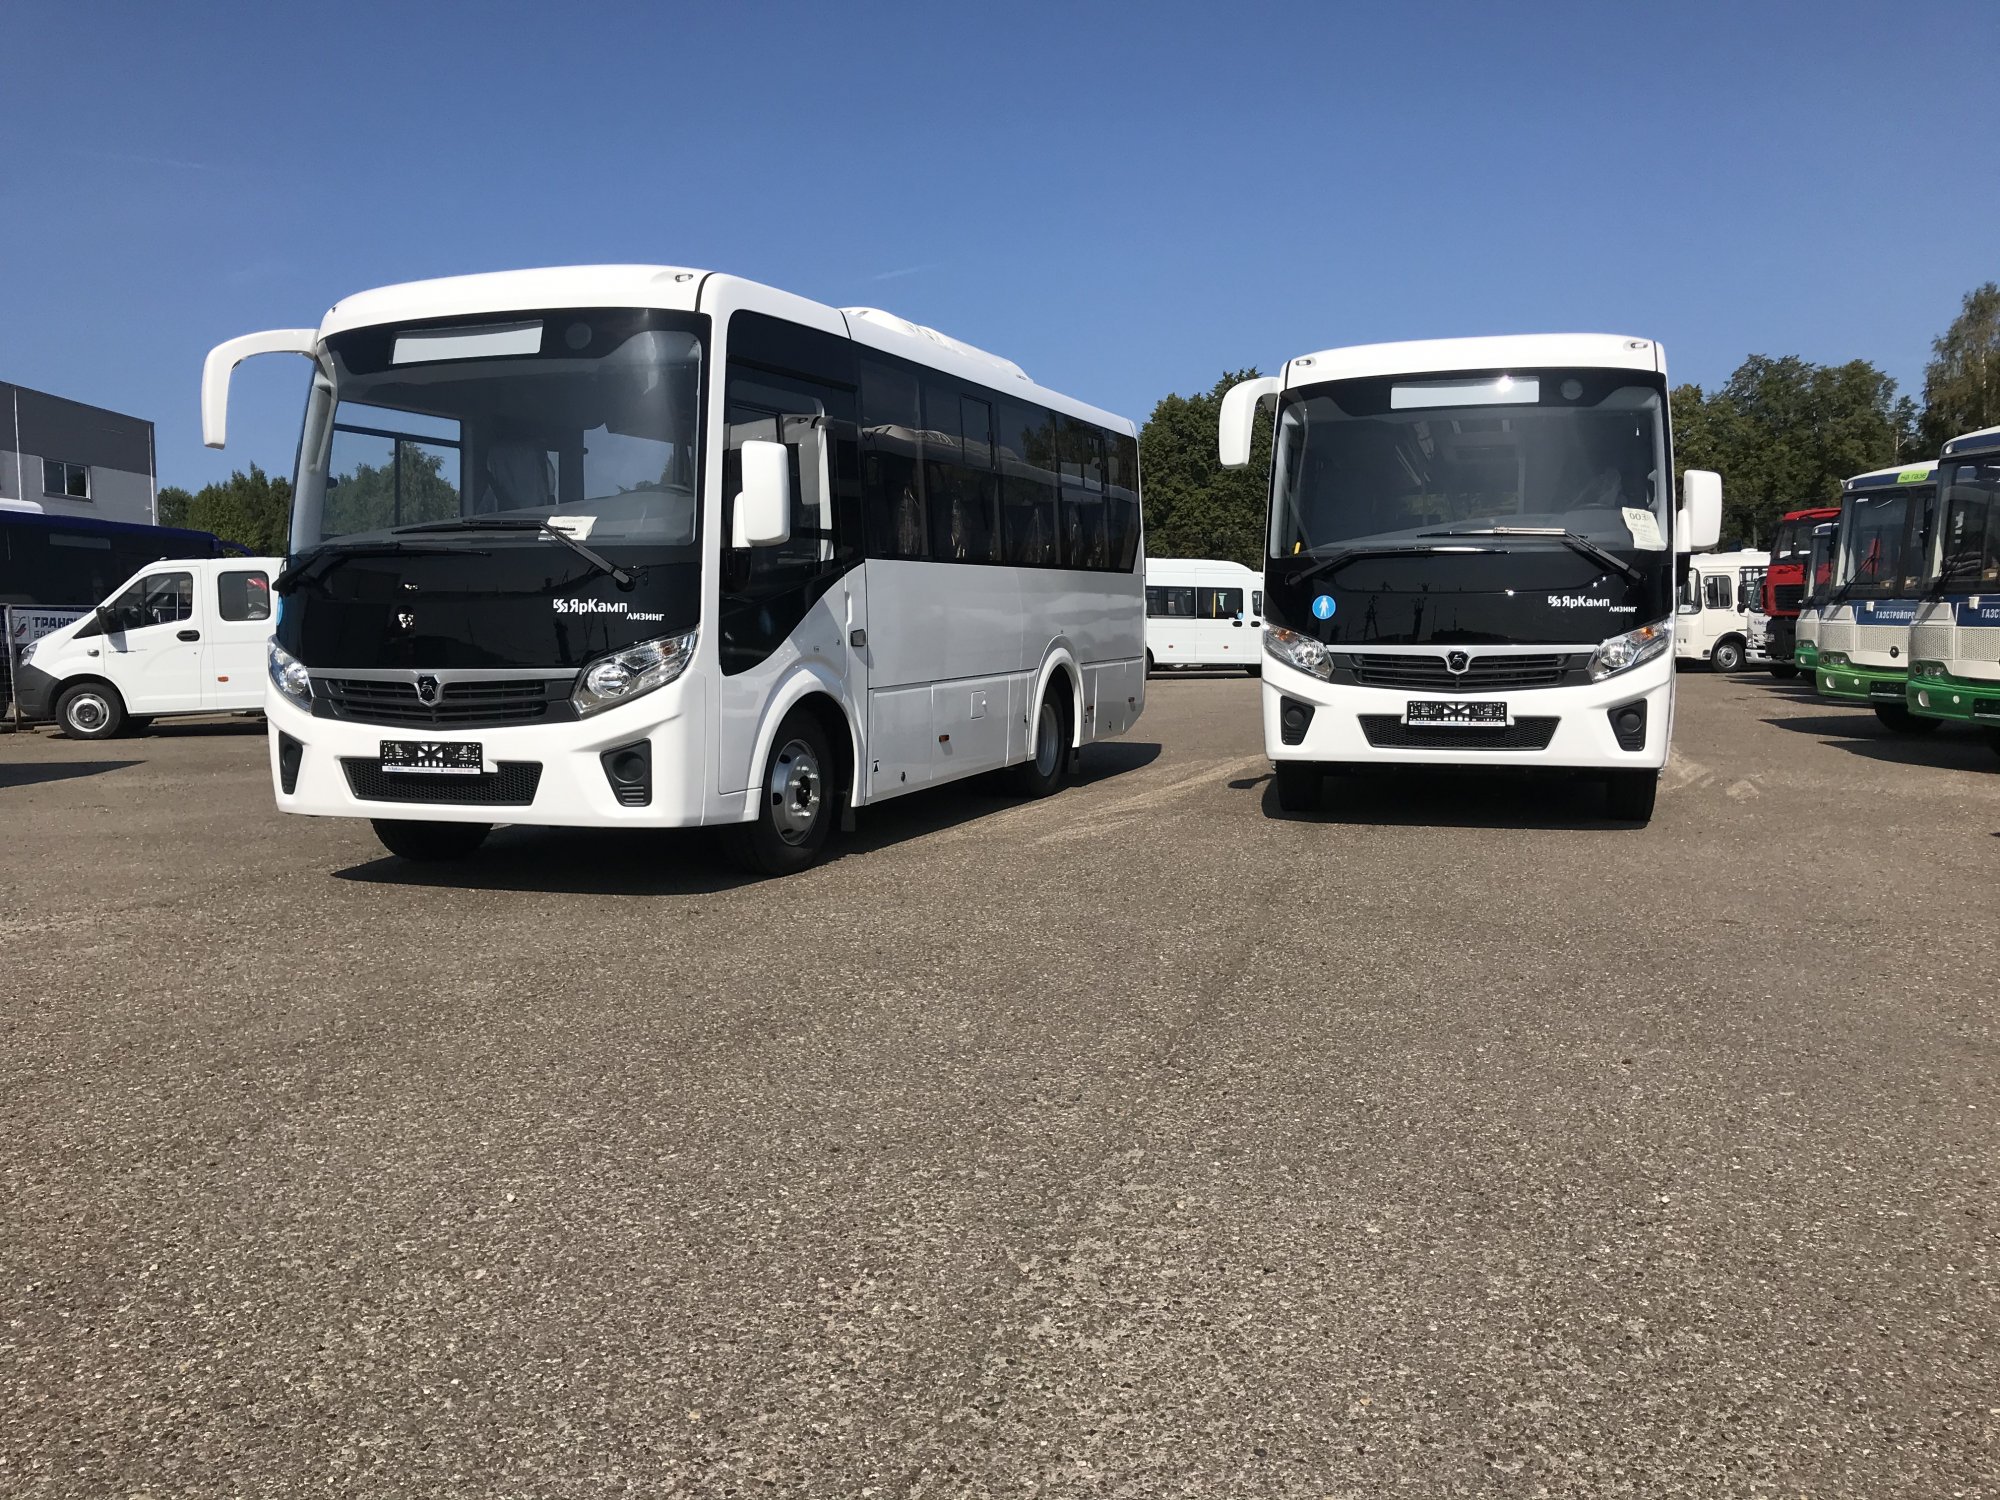 Два автобуса Vector NEXT переданы в лизинг